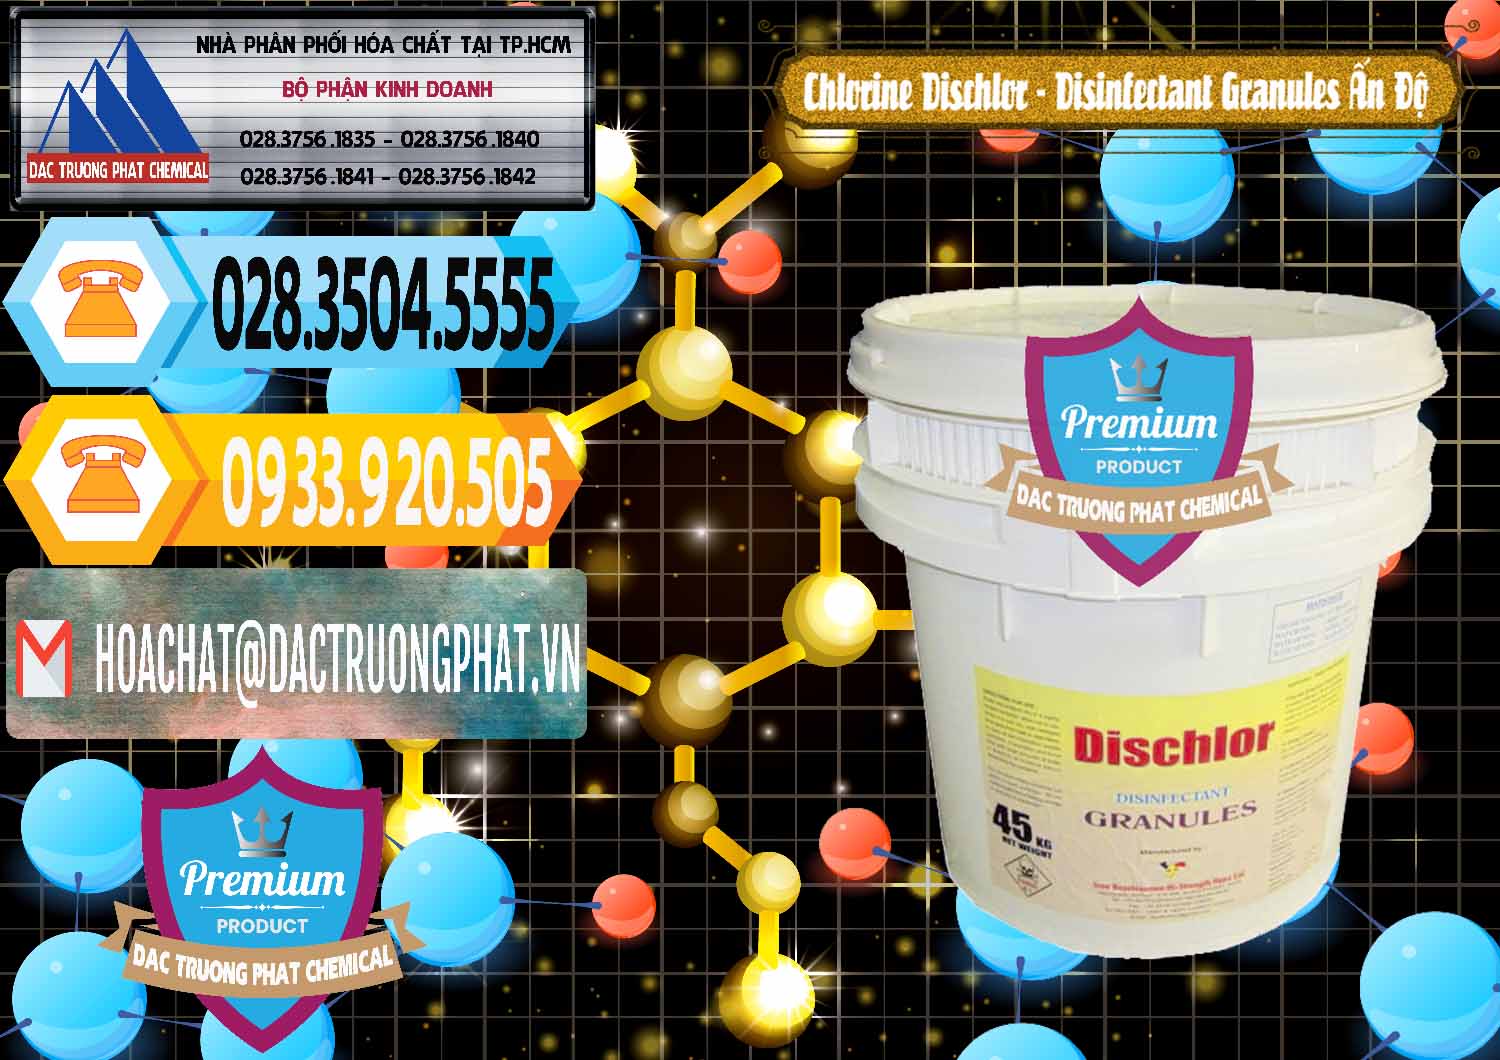 Cty bán & cung ứng Chlorine – Clorin 70% Dischlor - Disinfectant Granules Ấn Độ India - 0248 - Chuyên kinh doanh và phân phối hóa chất tại TP.HCM - hoachattayrua.net